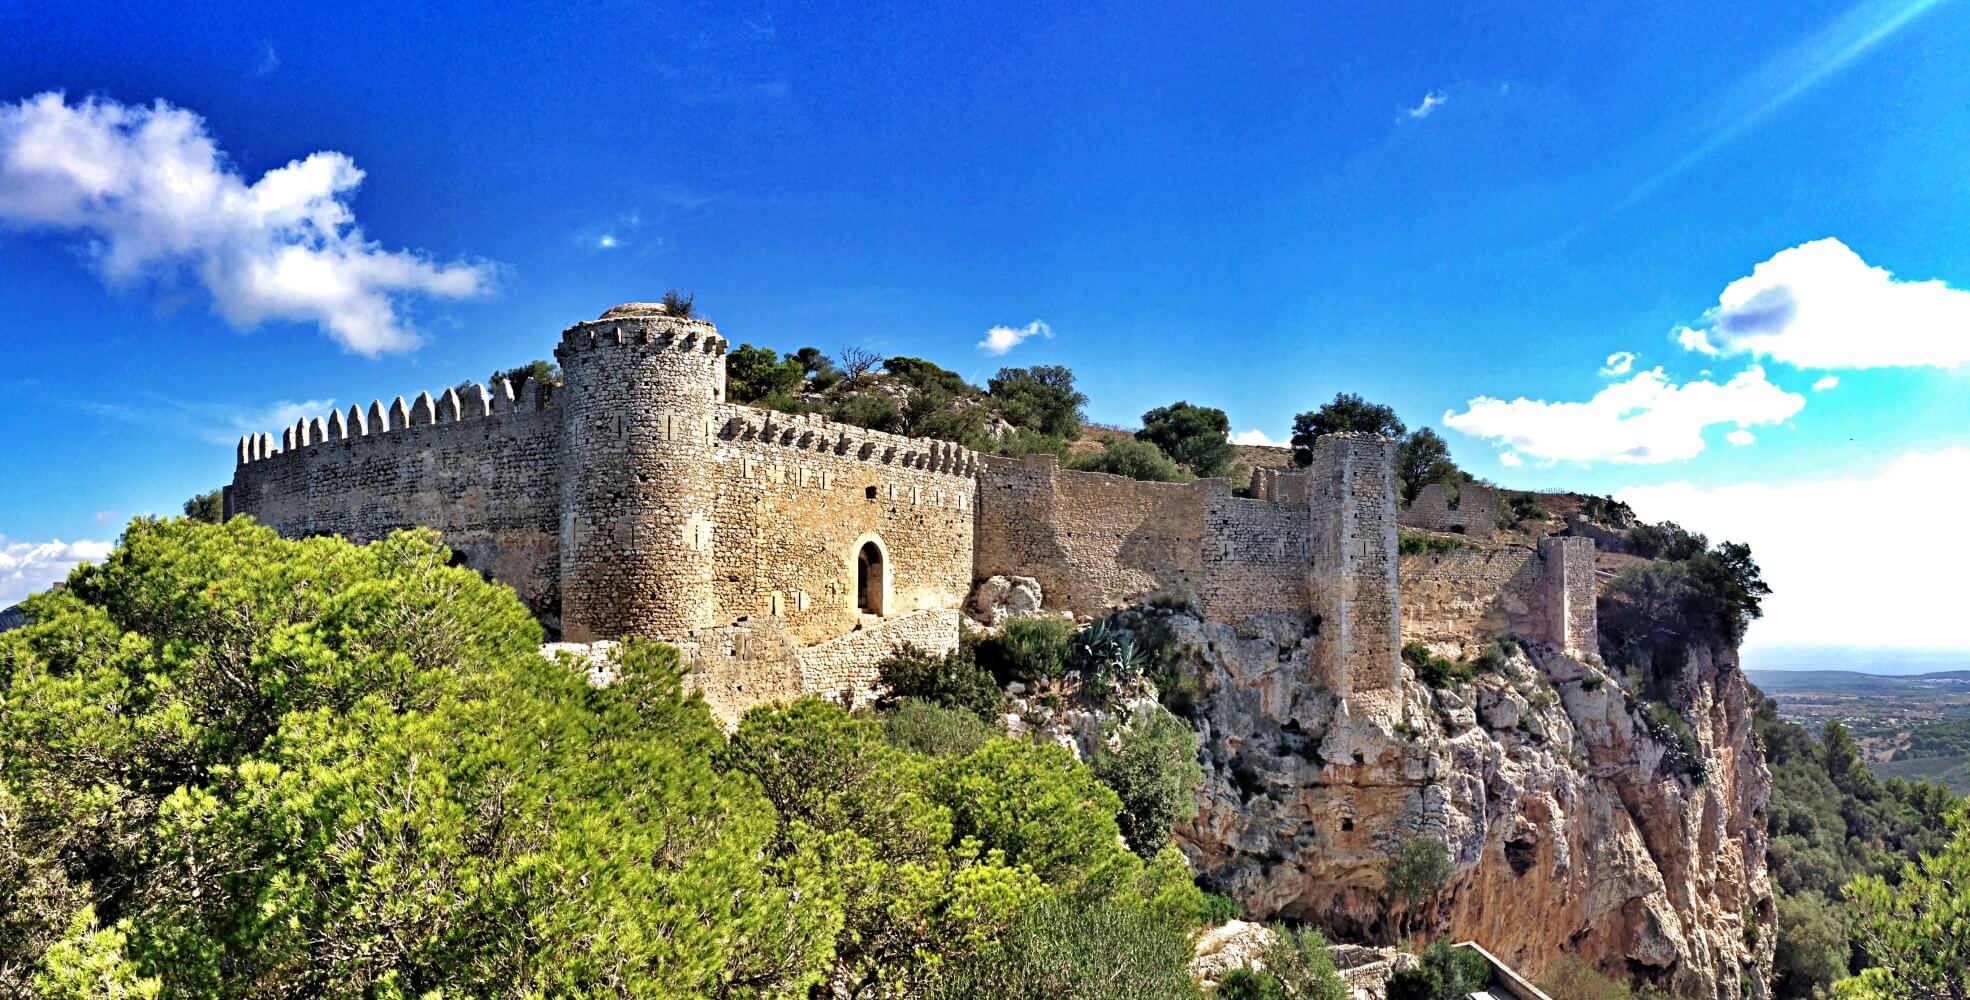 Santueri Castle